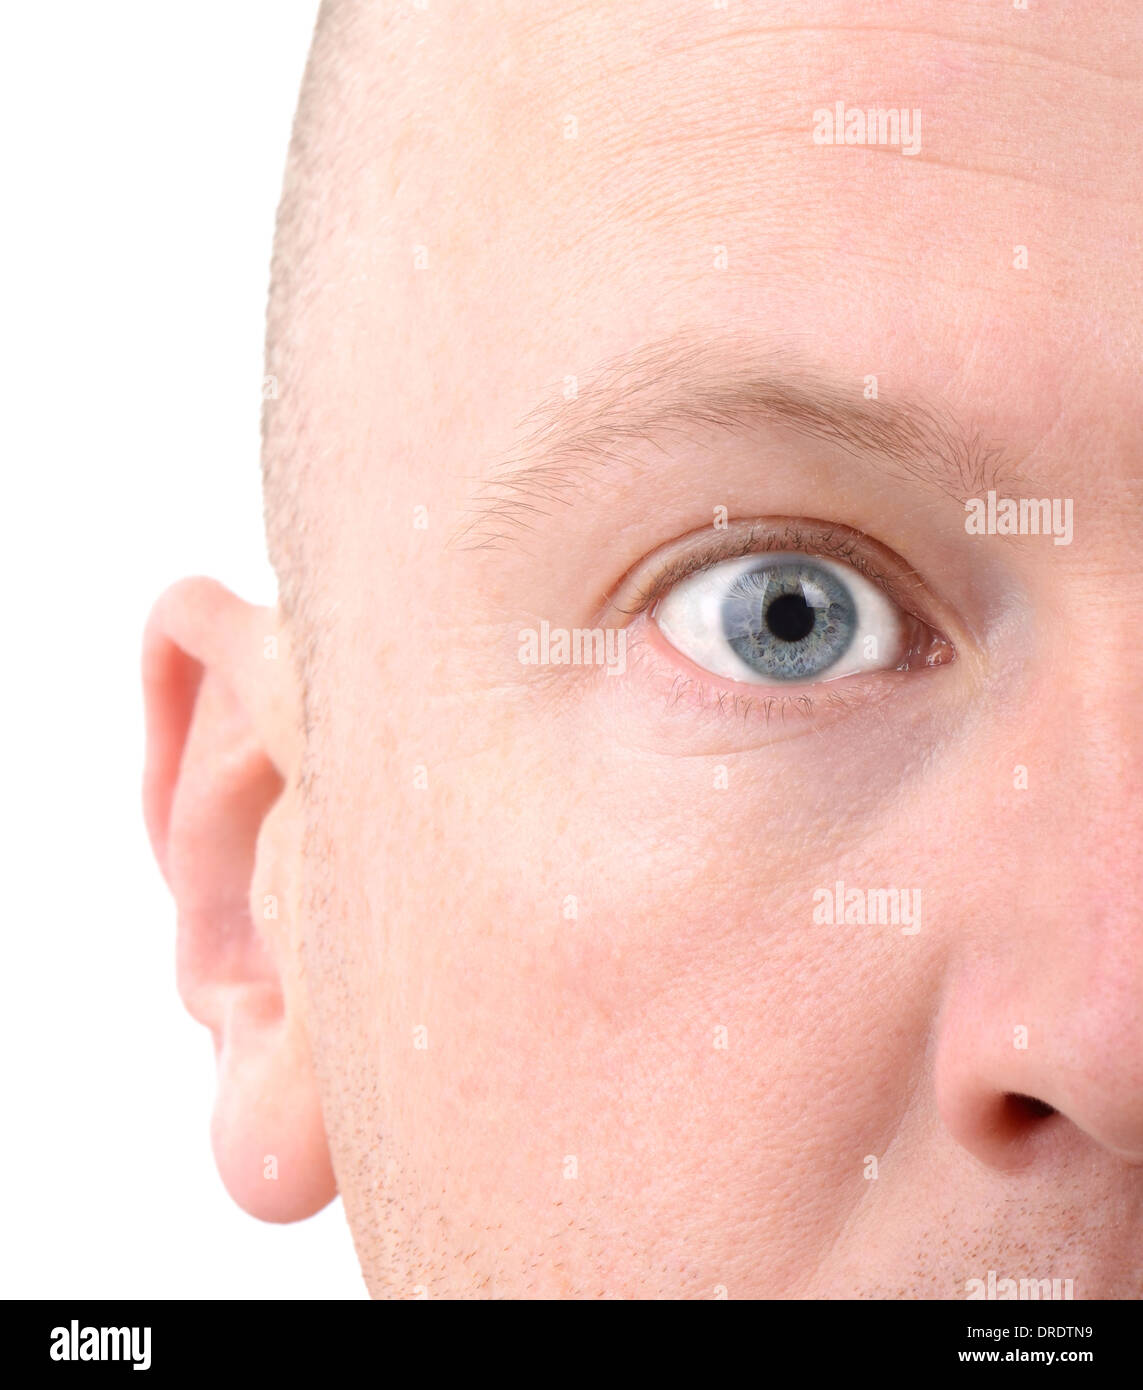 Eine Extreme Nahaufnahme Gesicht eines Mannes konzentriert sich auf das Auge und isoliert auf weißem Hintergrund Stockfoto